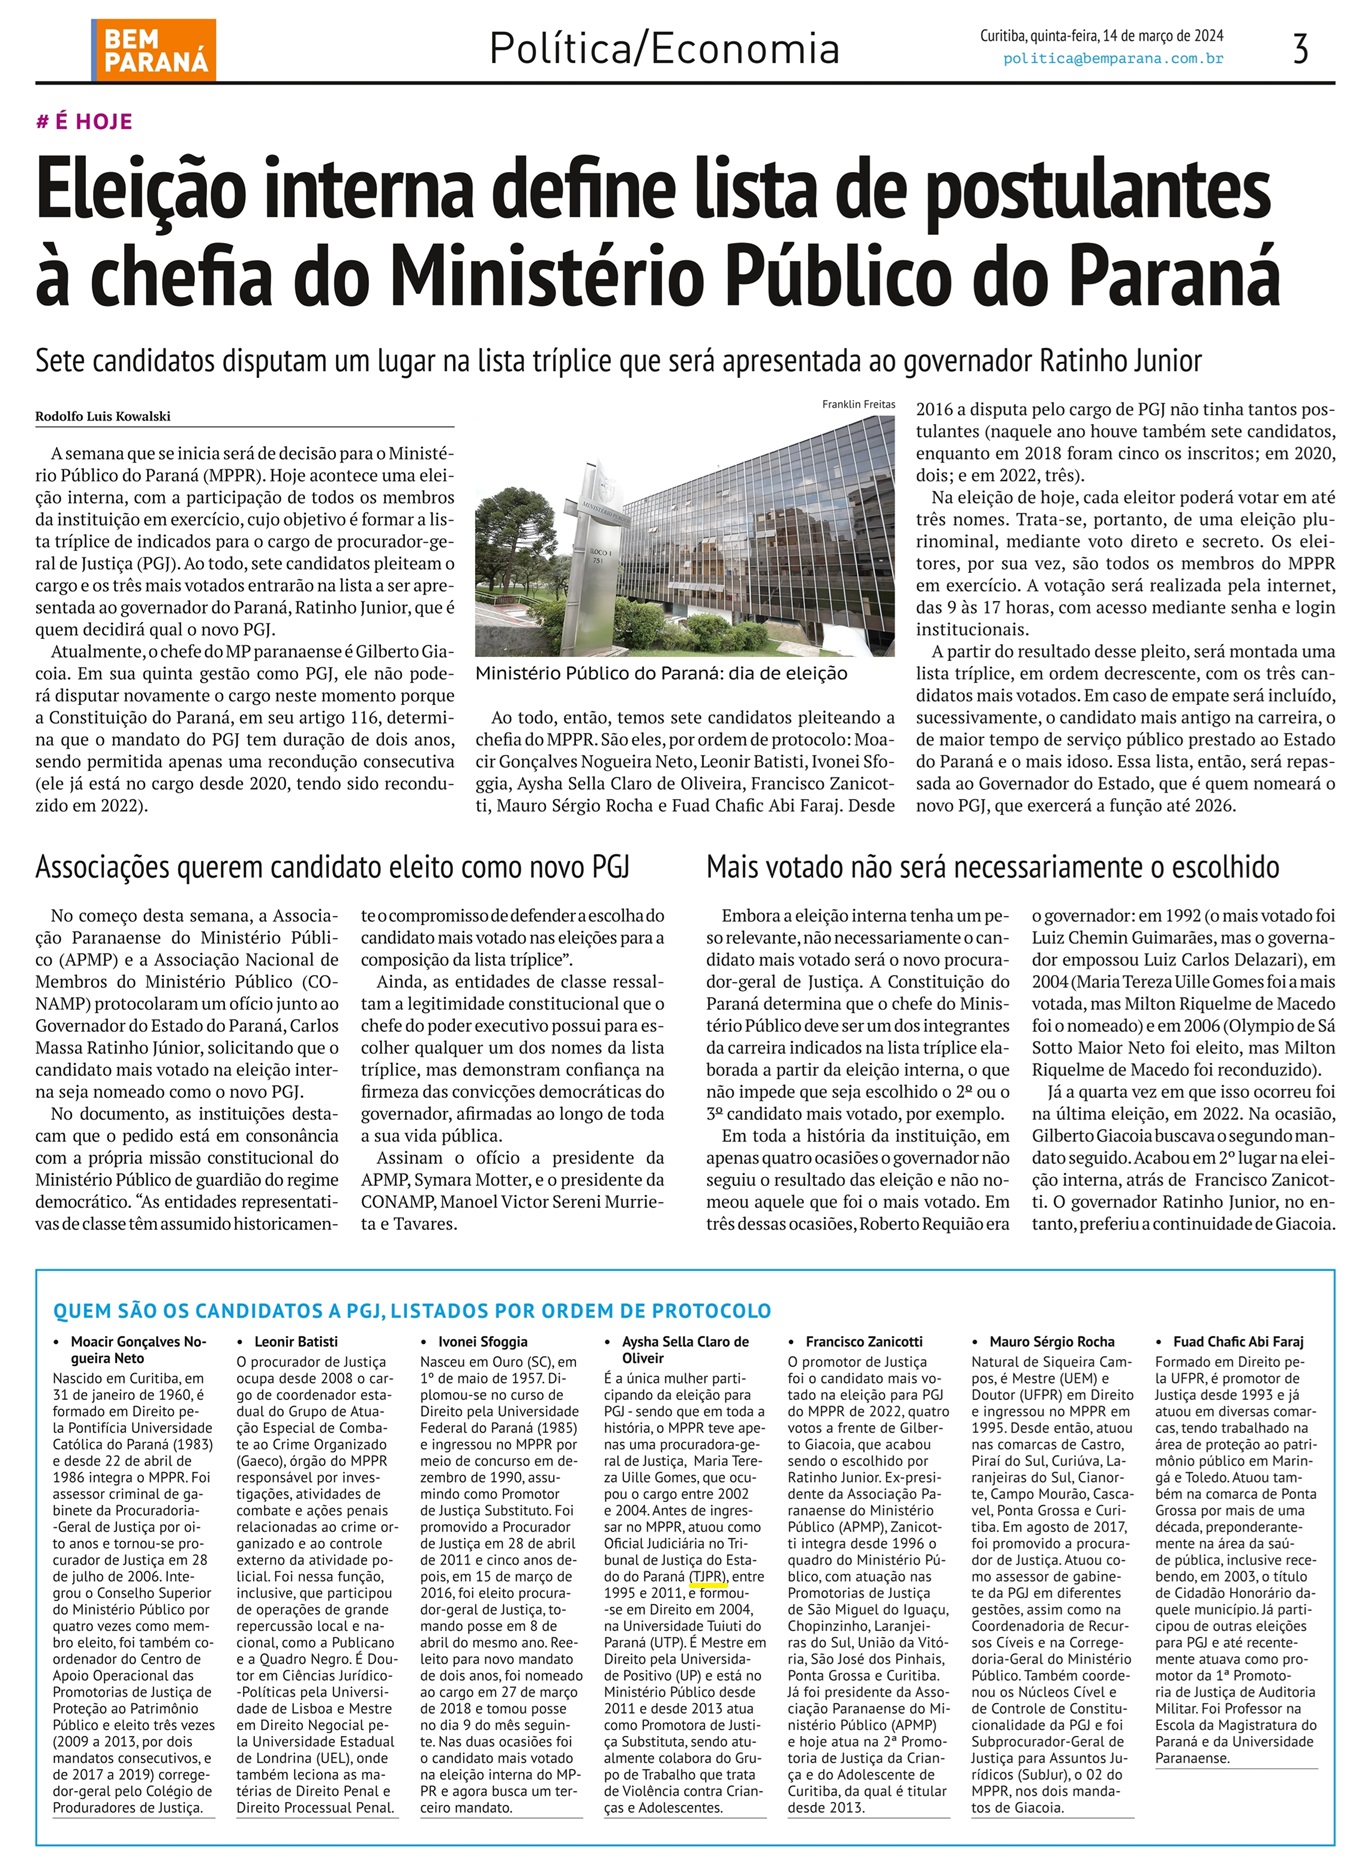 Eleição interna define lista de postulantes à chefia do Ministério Publico do Paraná